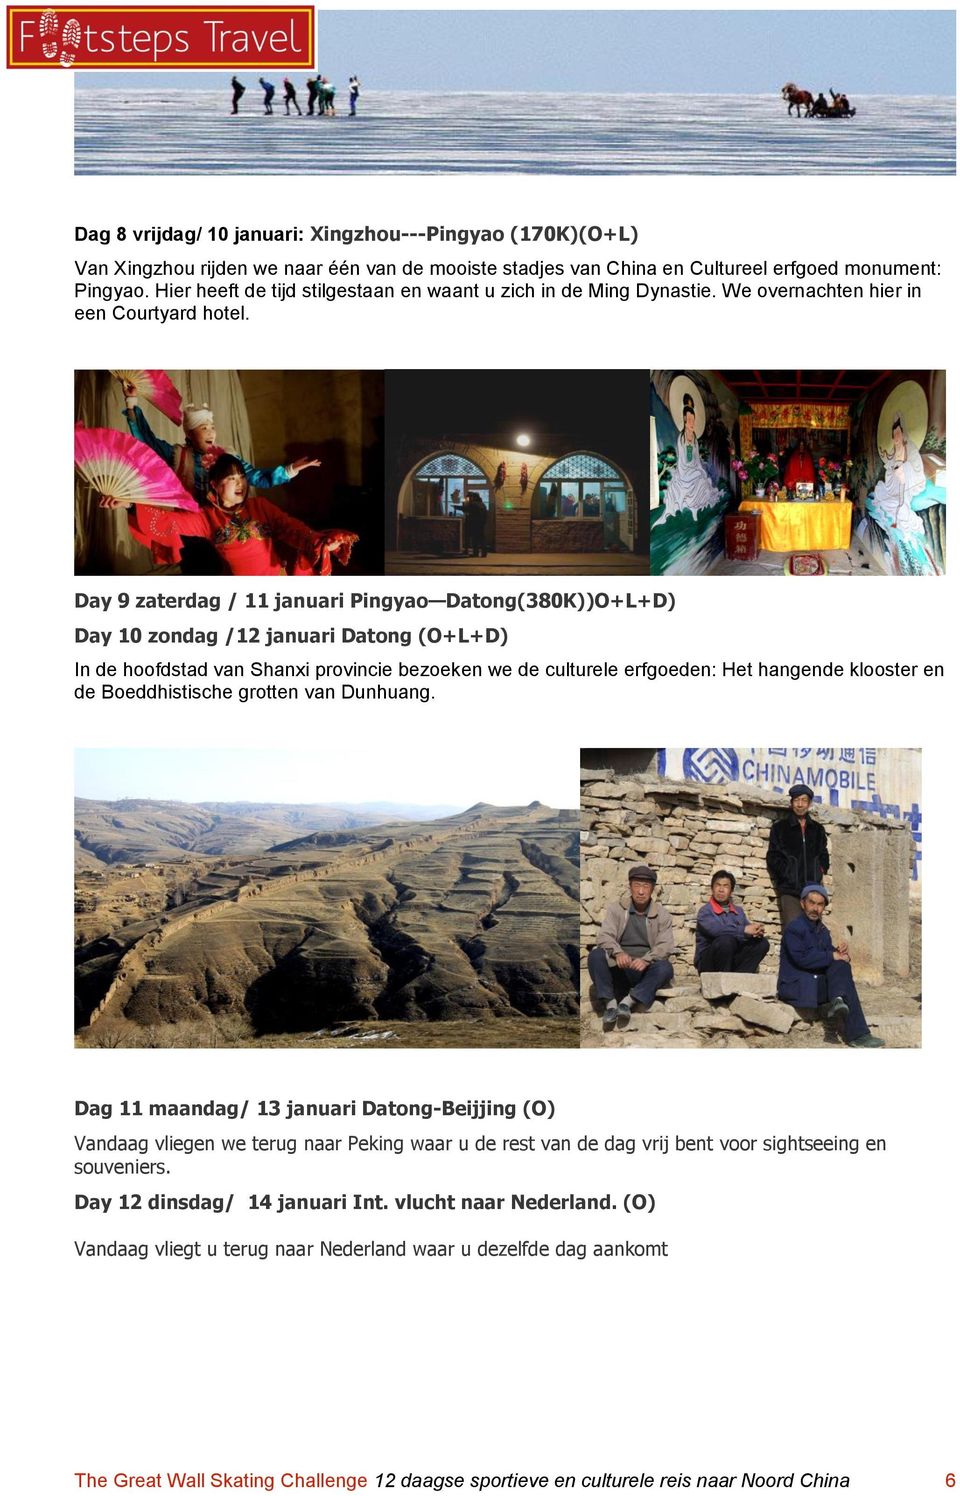 Day 9 zaterdag / 11 januari Pingyao Datong(380K))O+L+D) Day 10 zondag /12 januari Datong (O+L+D) In de hoofdstad van Shanxi provincie bezoeken we de culturele erfgoeden: Het hangende klooster en de